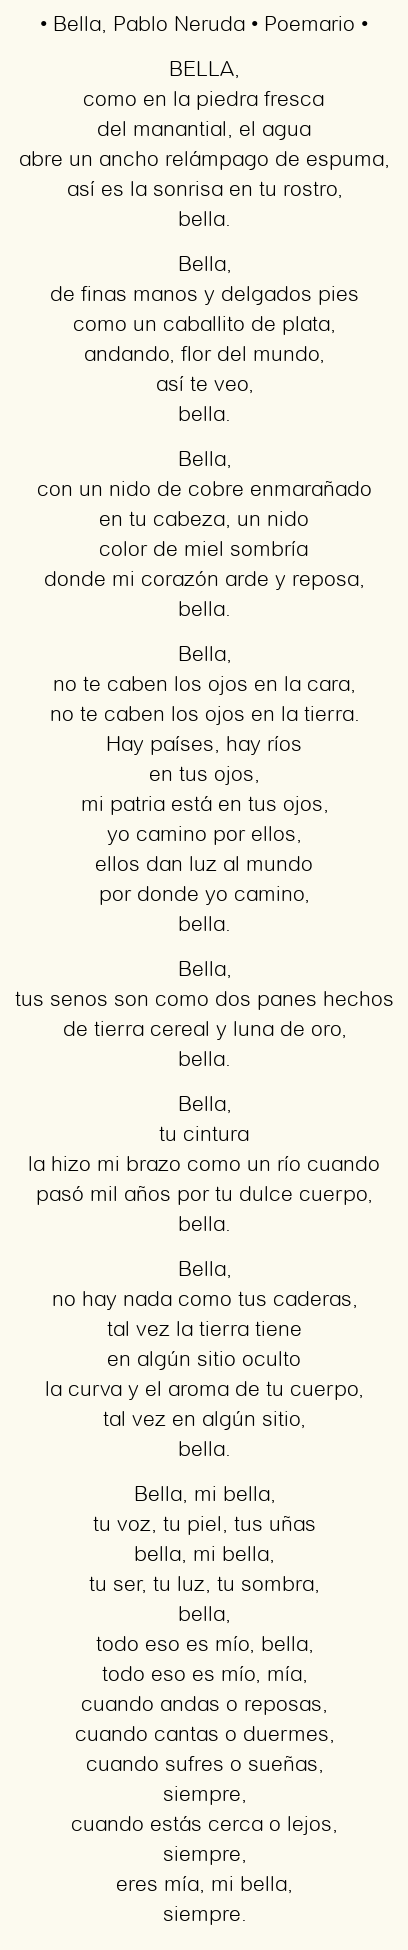 Imagen con el poema Bella, por Pablo Neruda